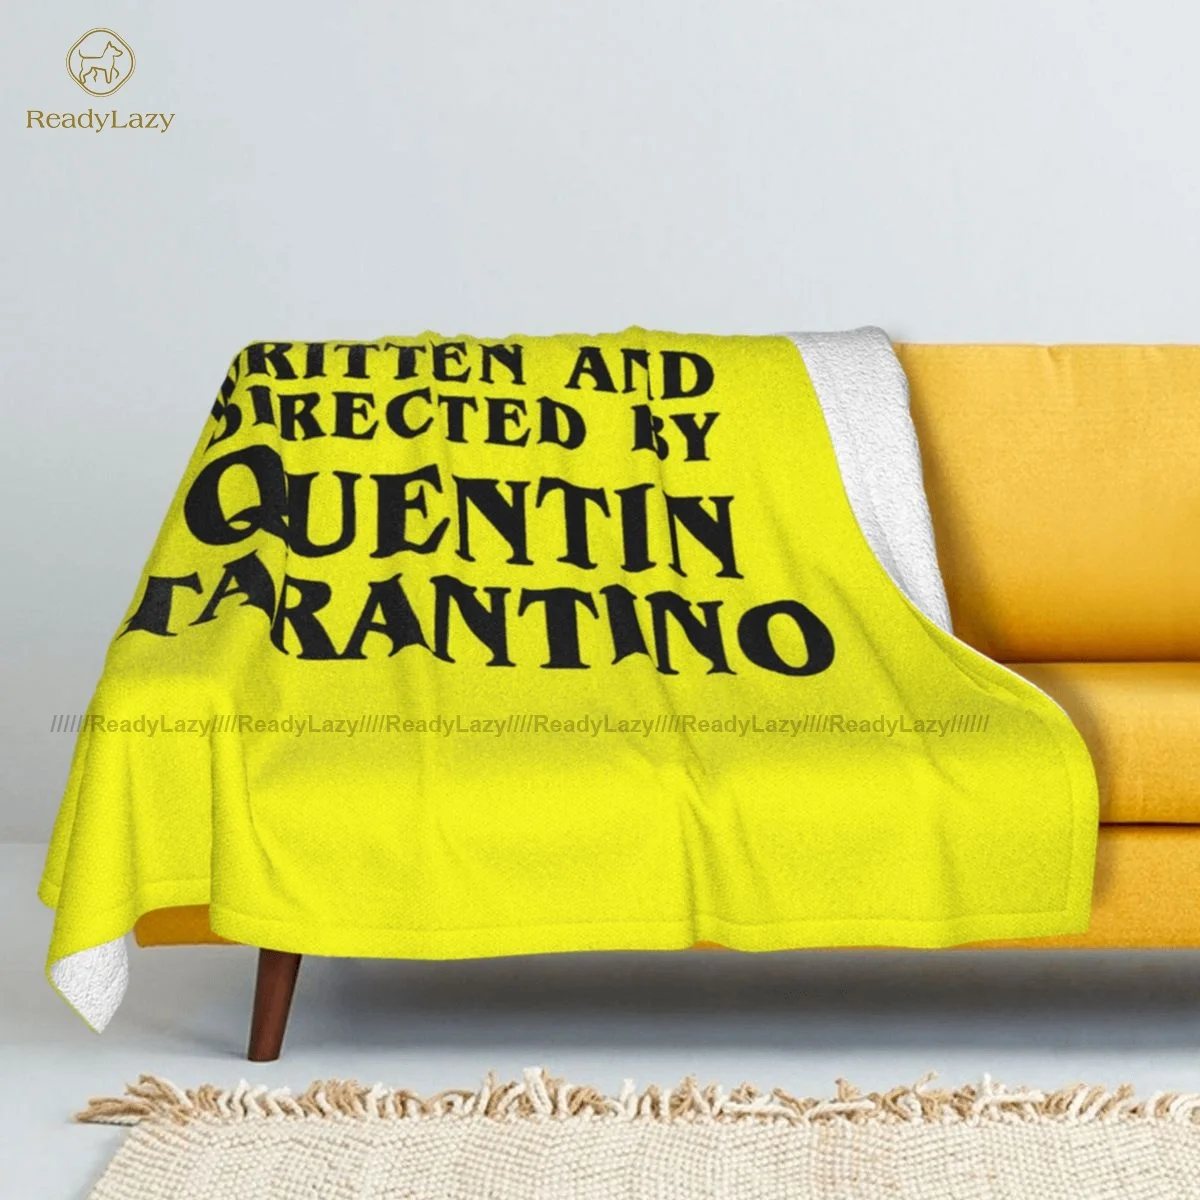 

Django одеяло, дешевое роскошное покрывало, шерпа, флисовое мягкое одеяло для сна